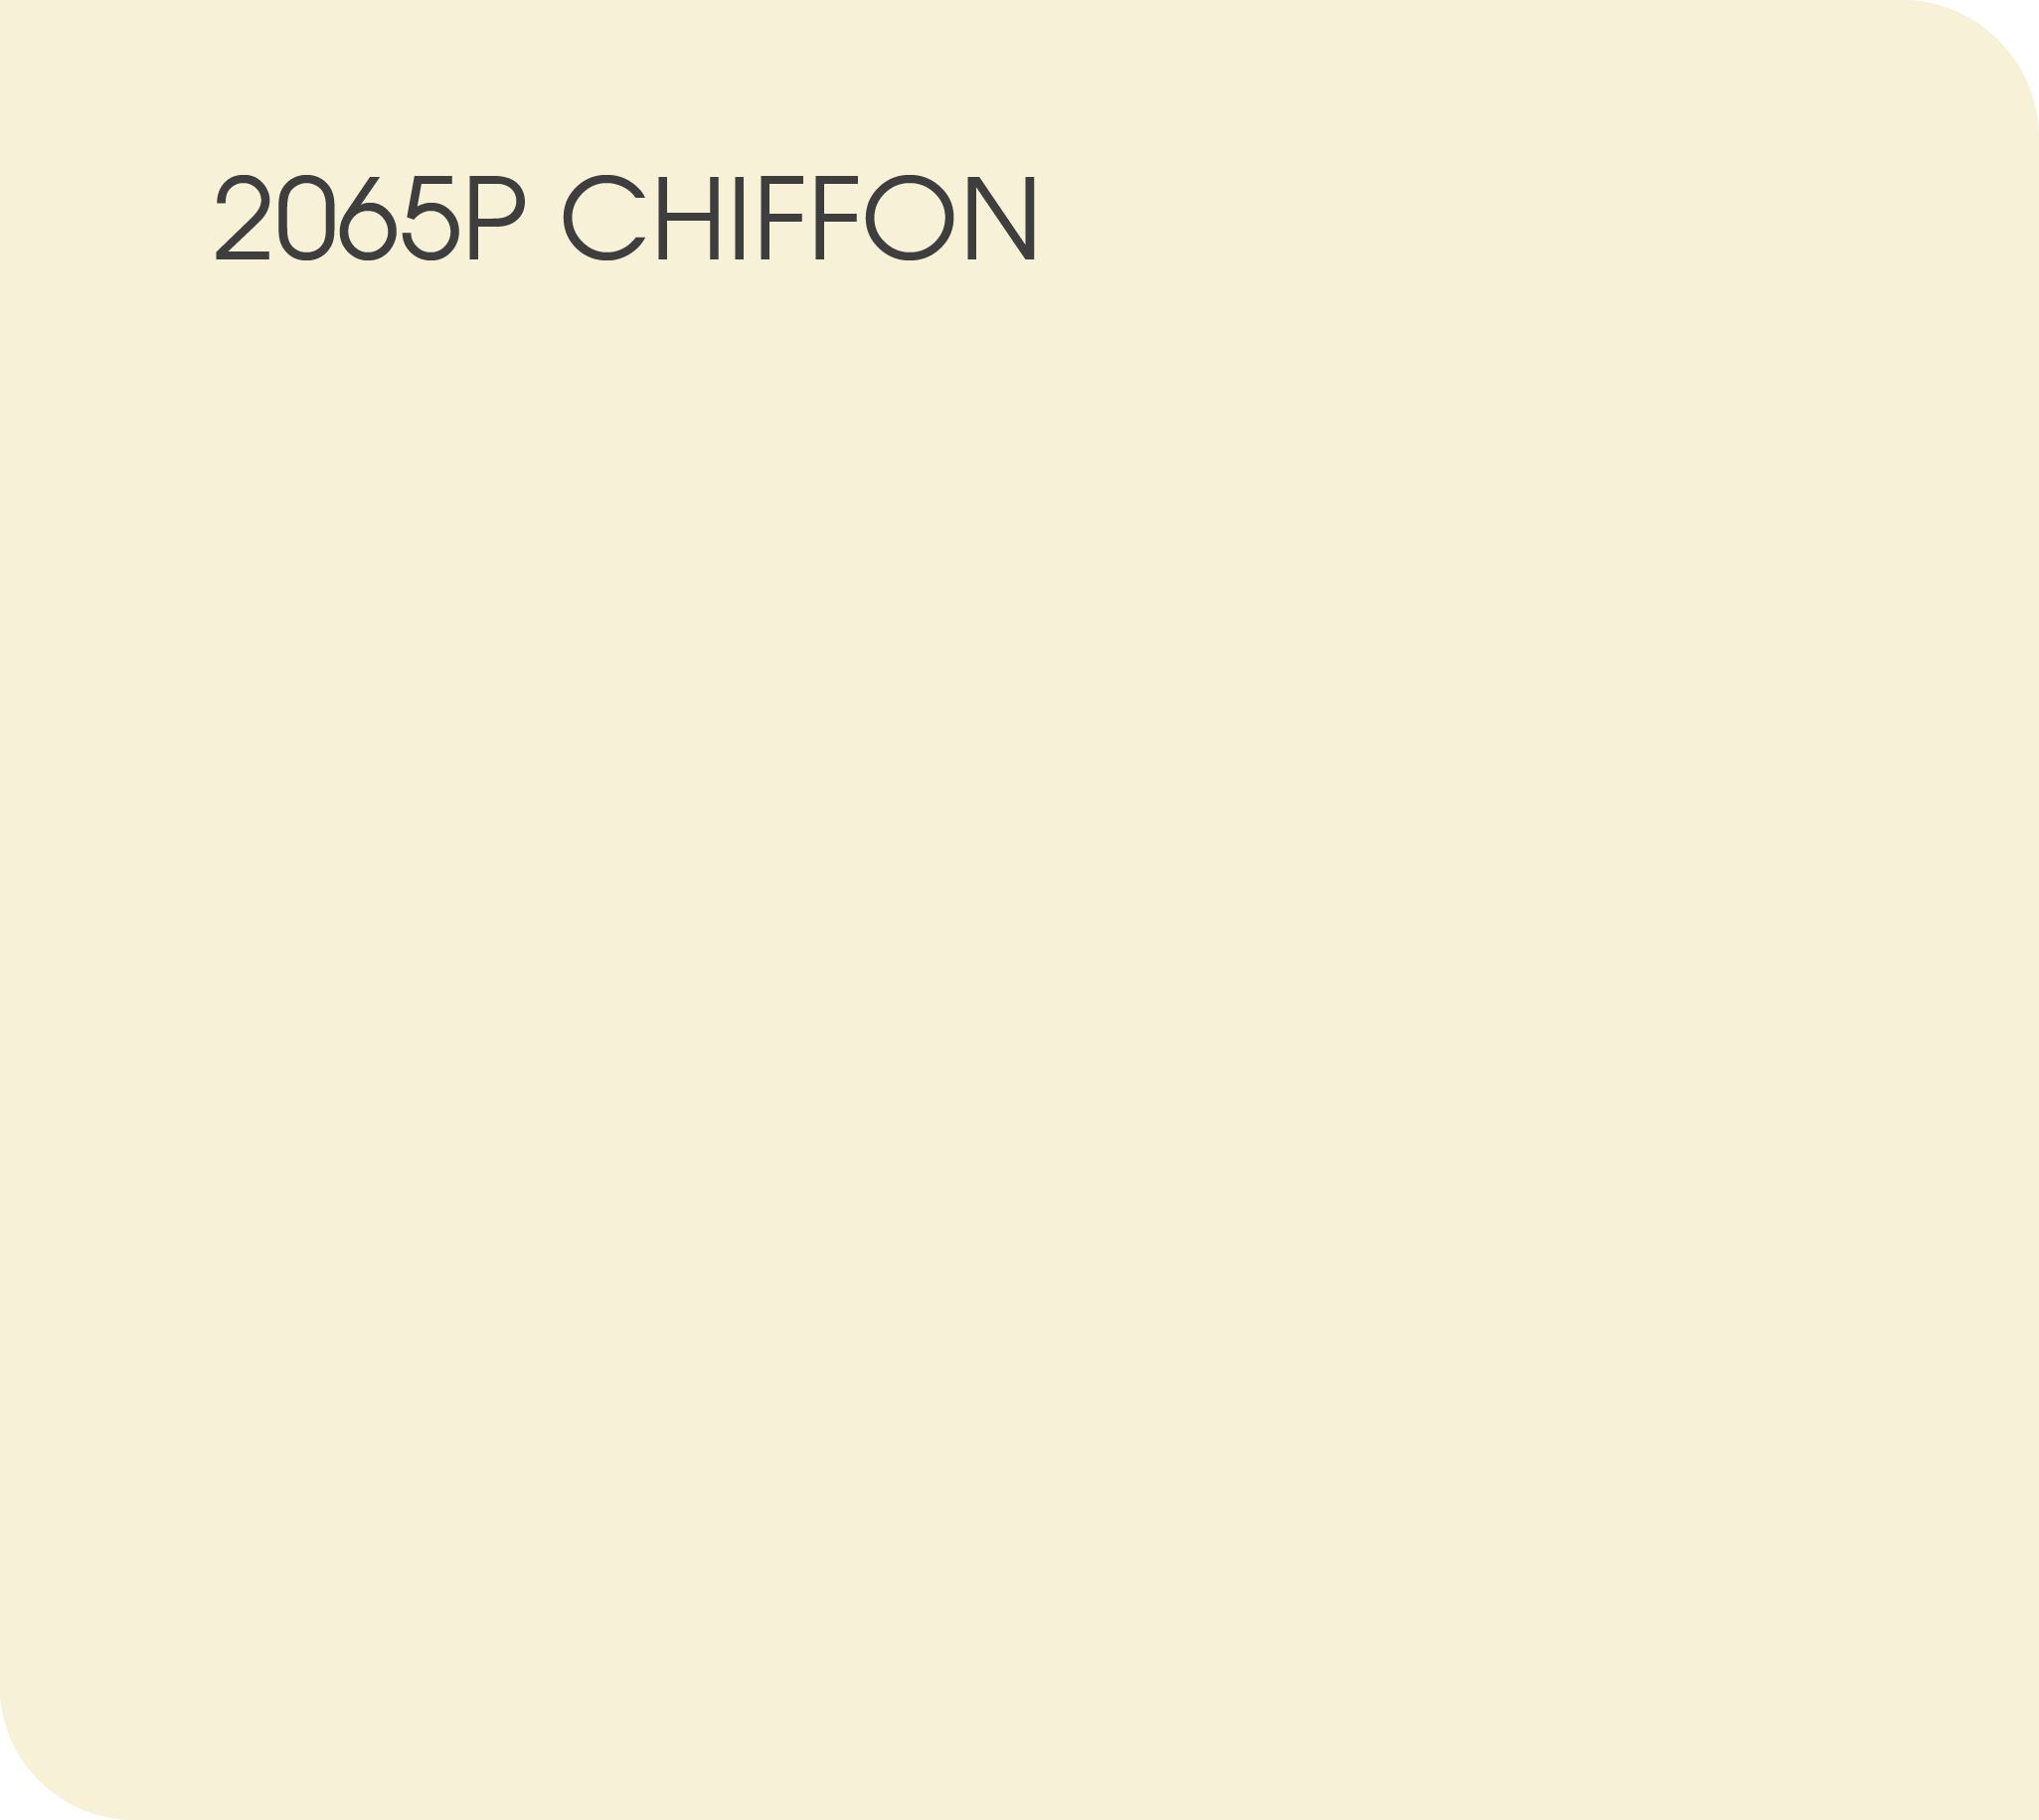 Chiffon